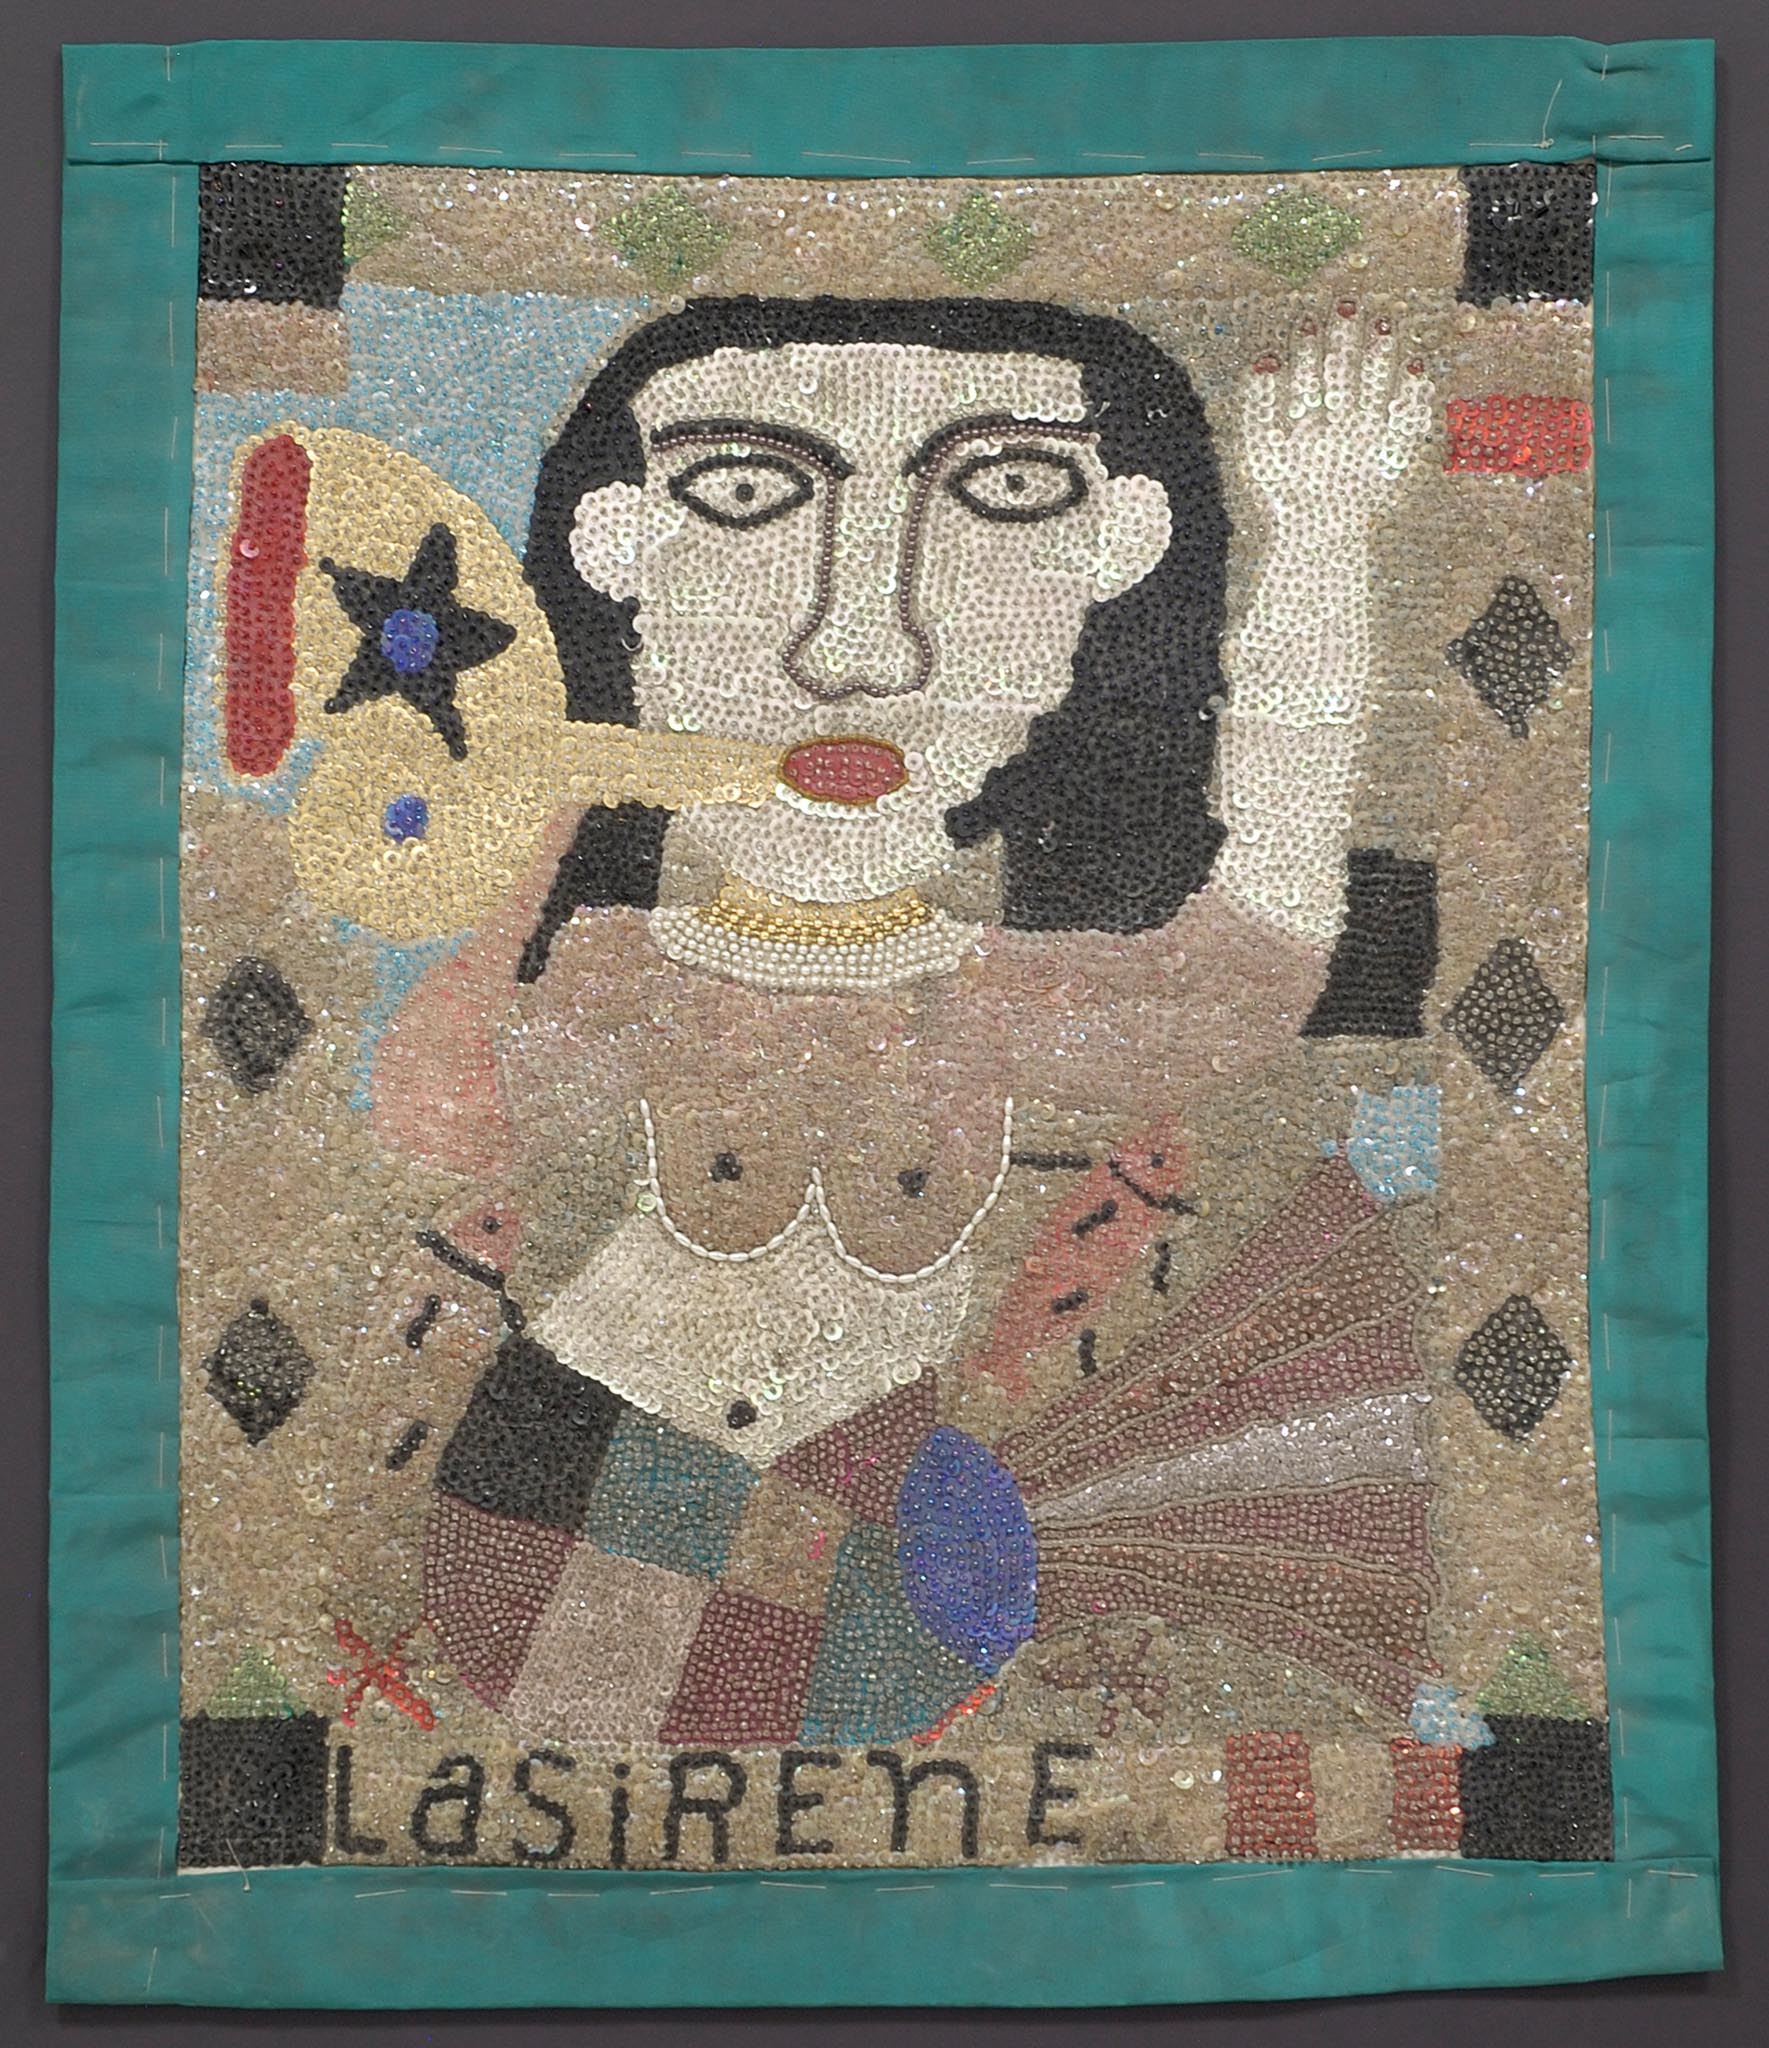 LaSirene, 1980s